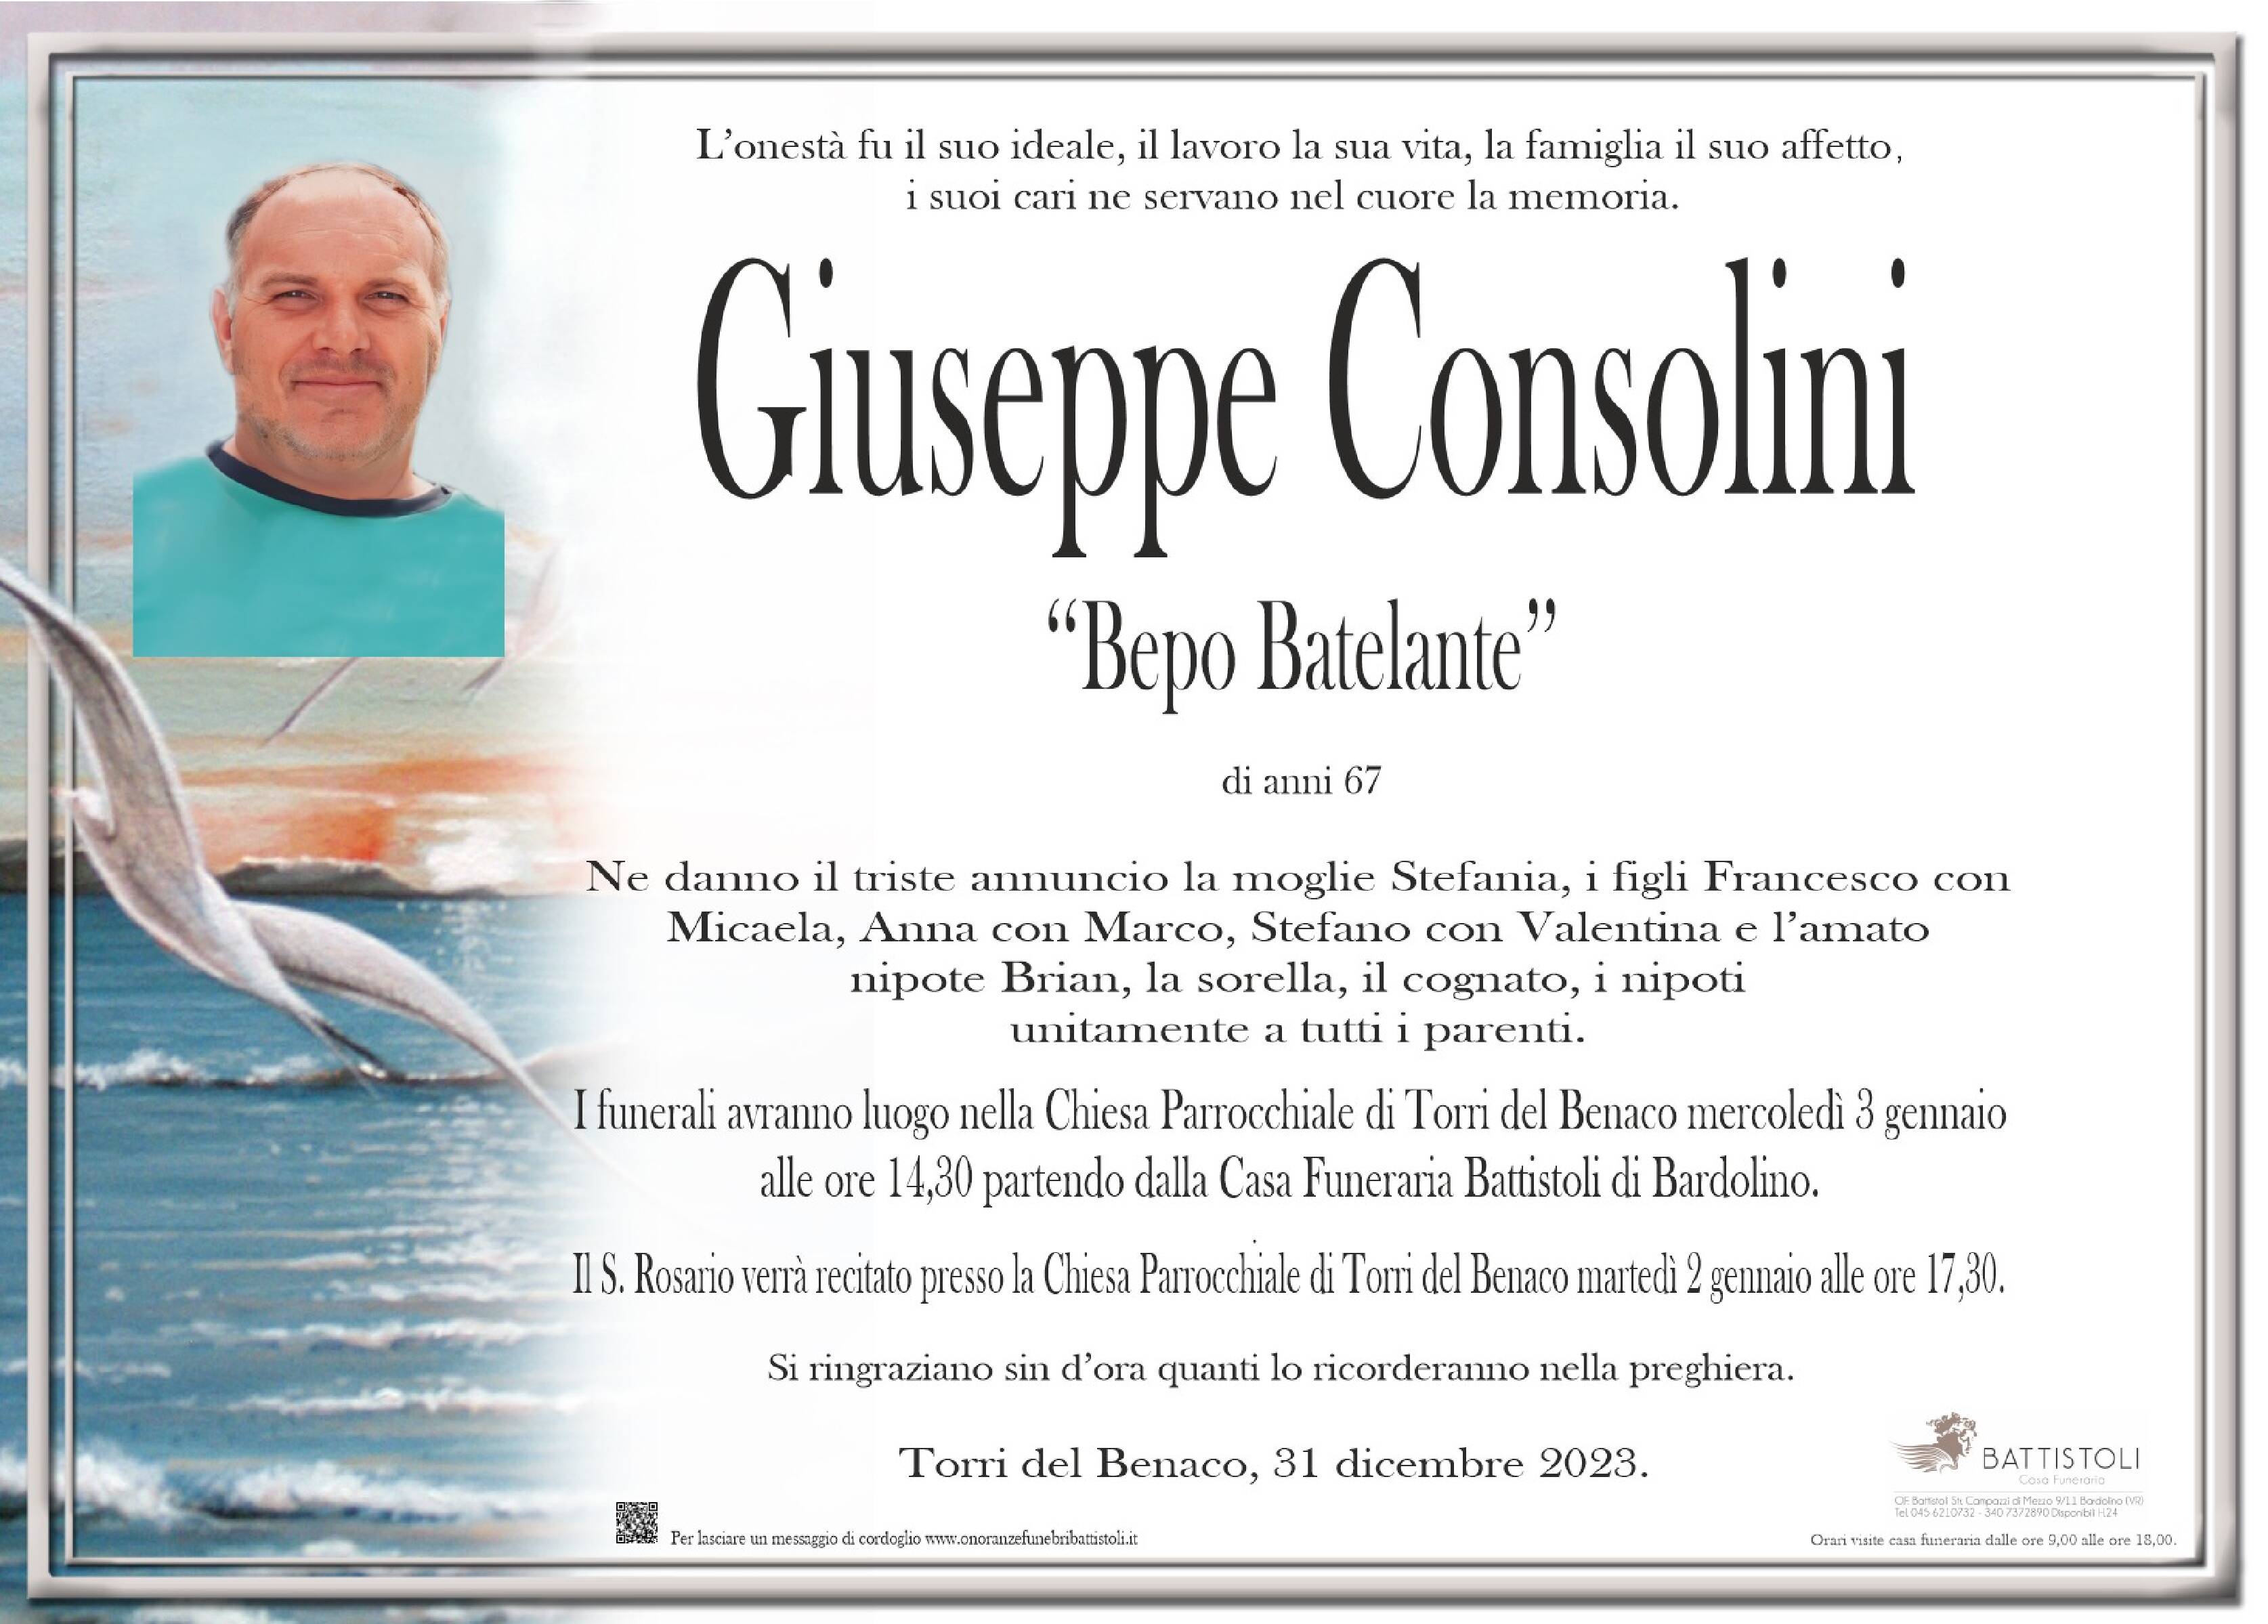 Consolini Giuseppe